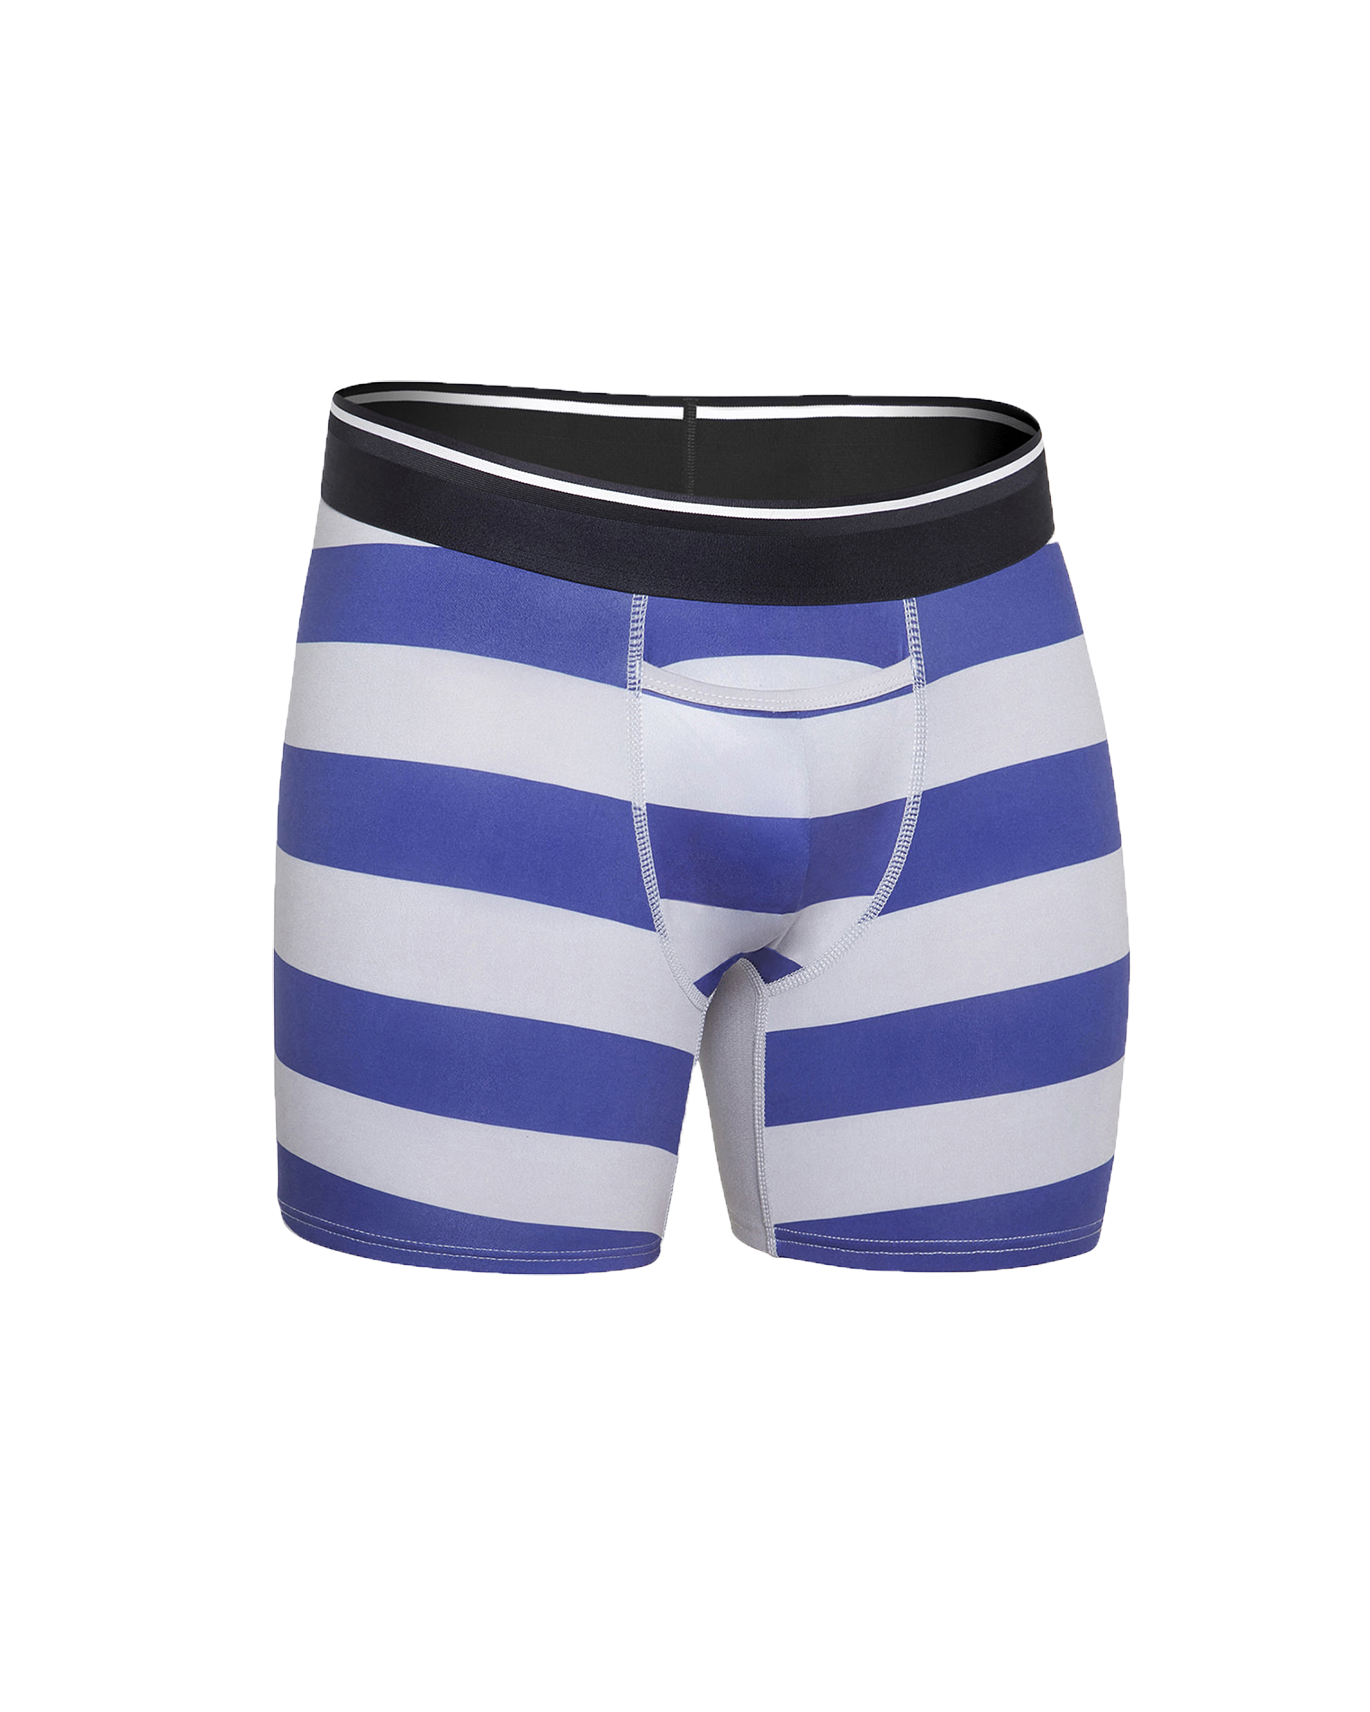 Low Rise Boy Booty Shorts Pants Burgundy White Stripes Underwear W/ Pocket  XL